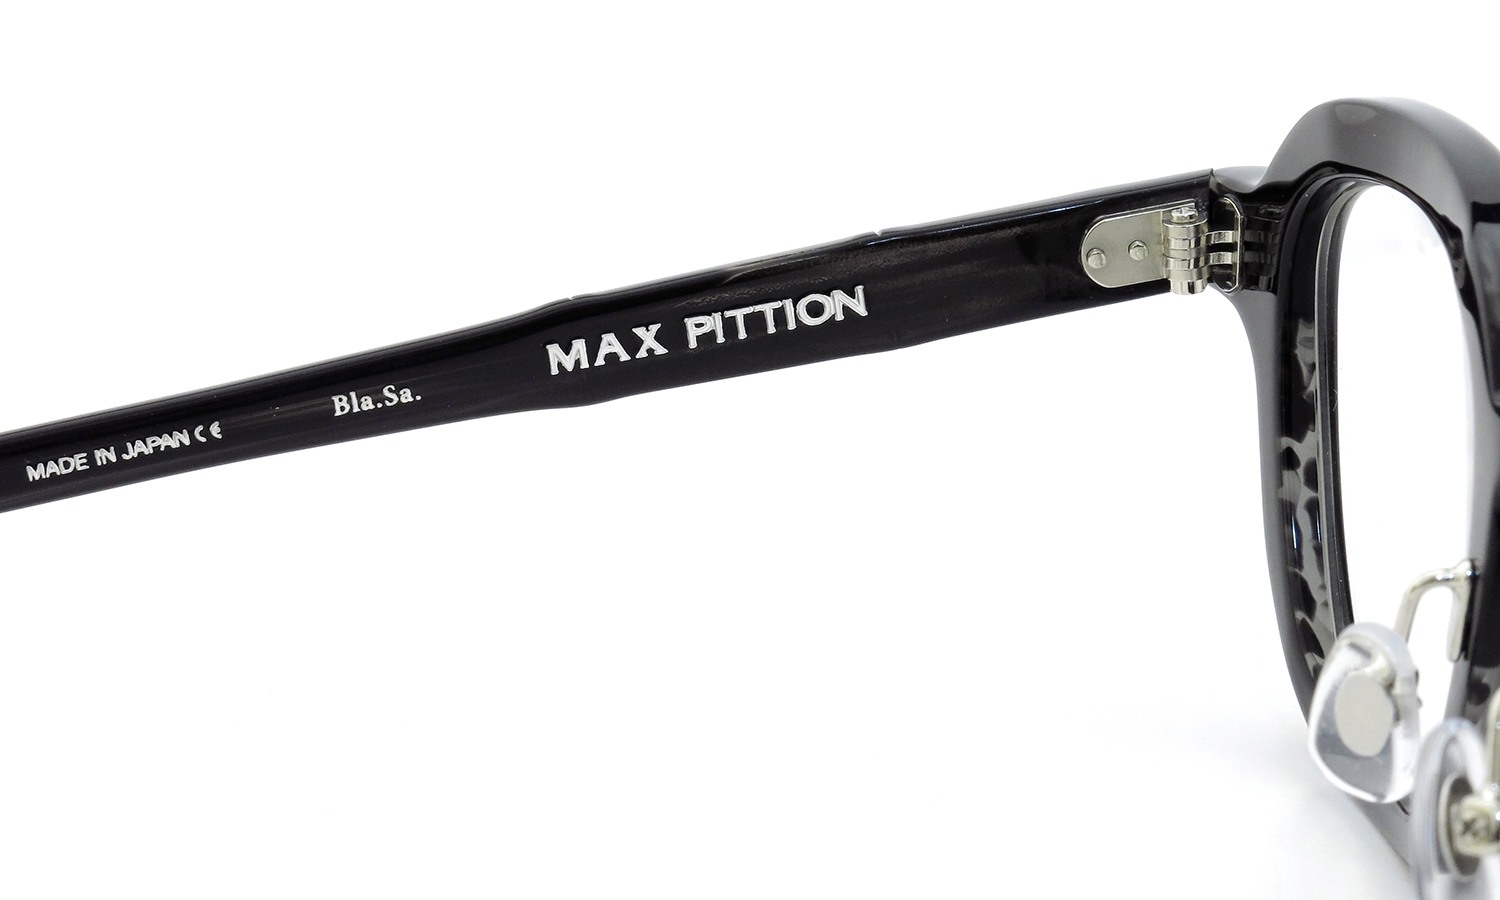 MAX PITTION マックス・ピティオン メガネ [MAP COLLECTION] Bronson ブロンソン 44size Bla.Sa.